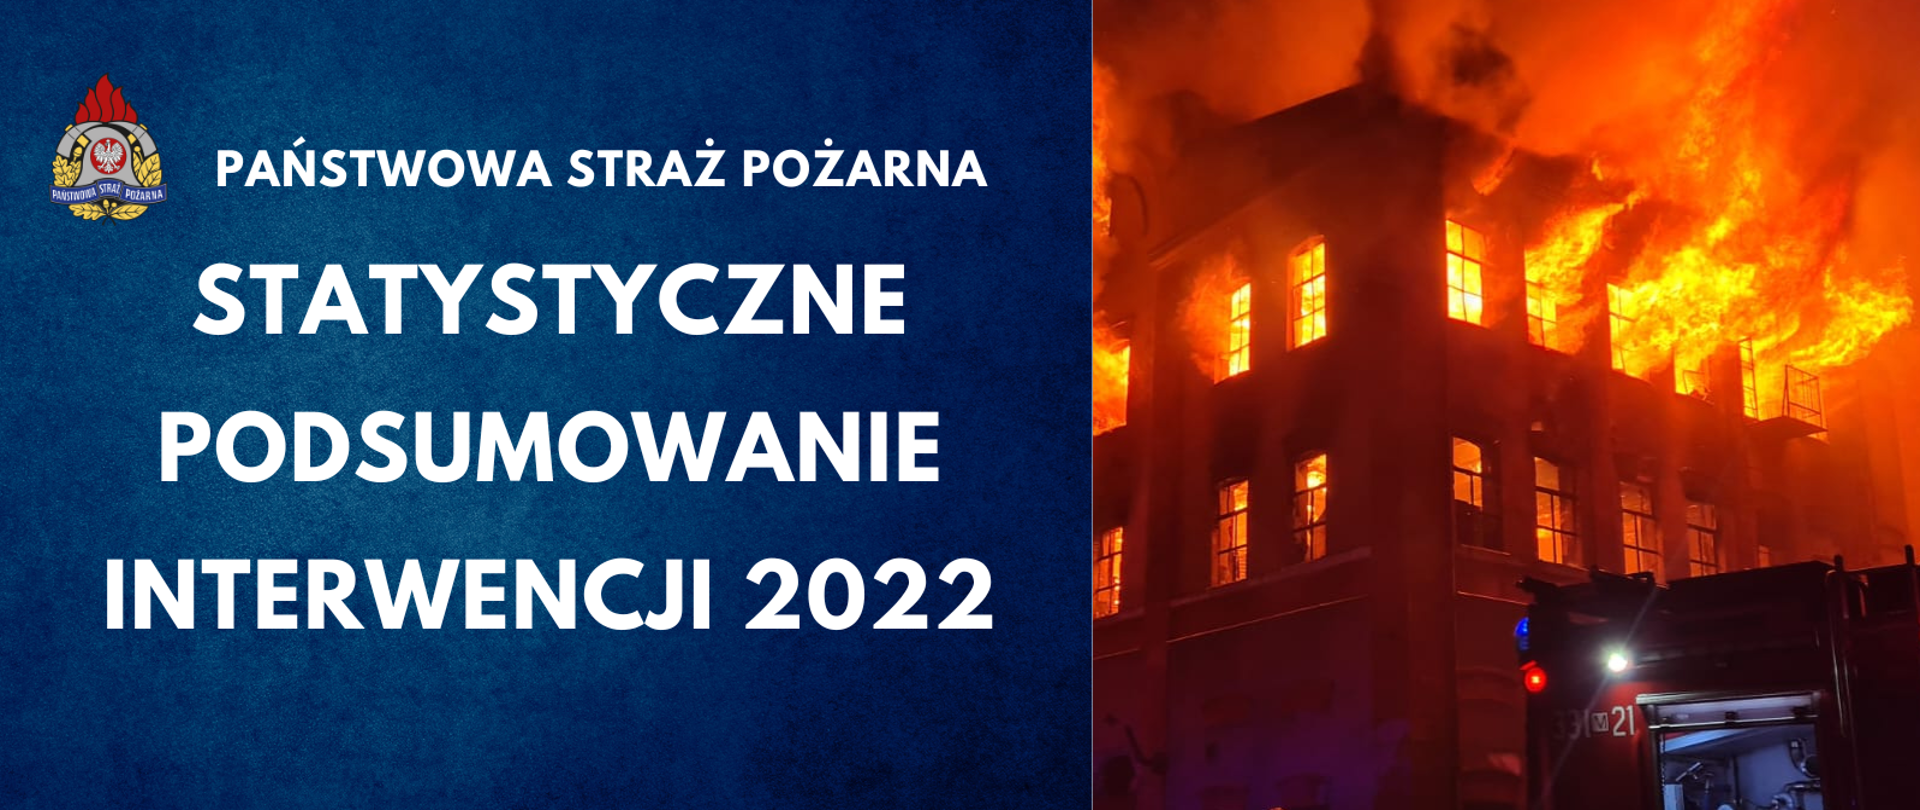 Na zdjęciu widać biały napis na granatowym tle statystyczne podsumowanie interwencji 2022. Po prawej stronie widać płonący budynek oraz strażaków przy akcji gaszenia.